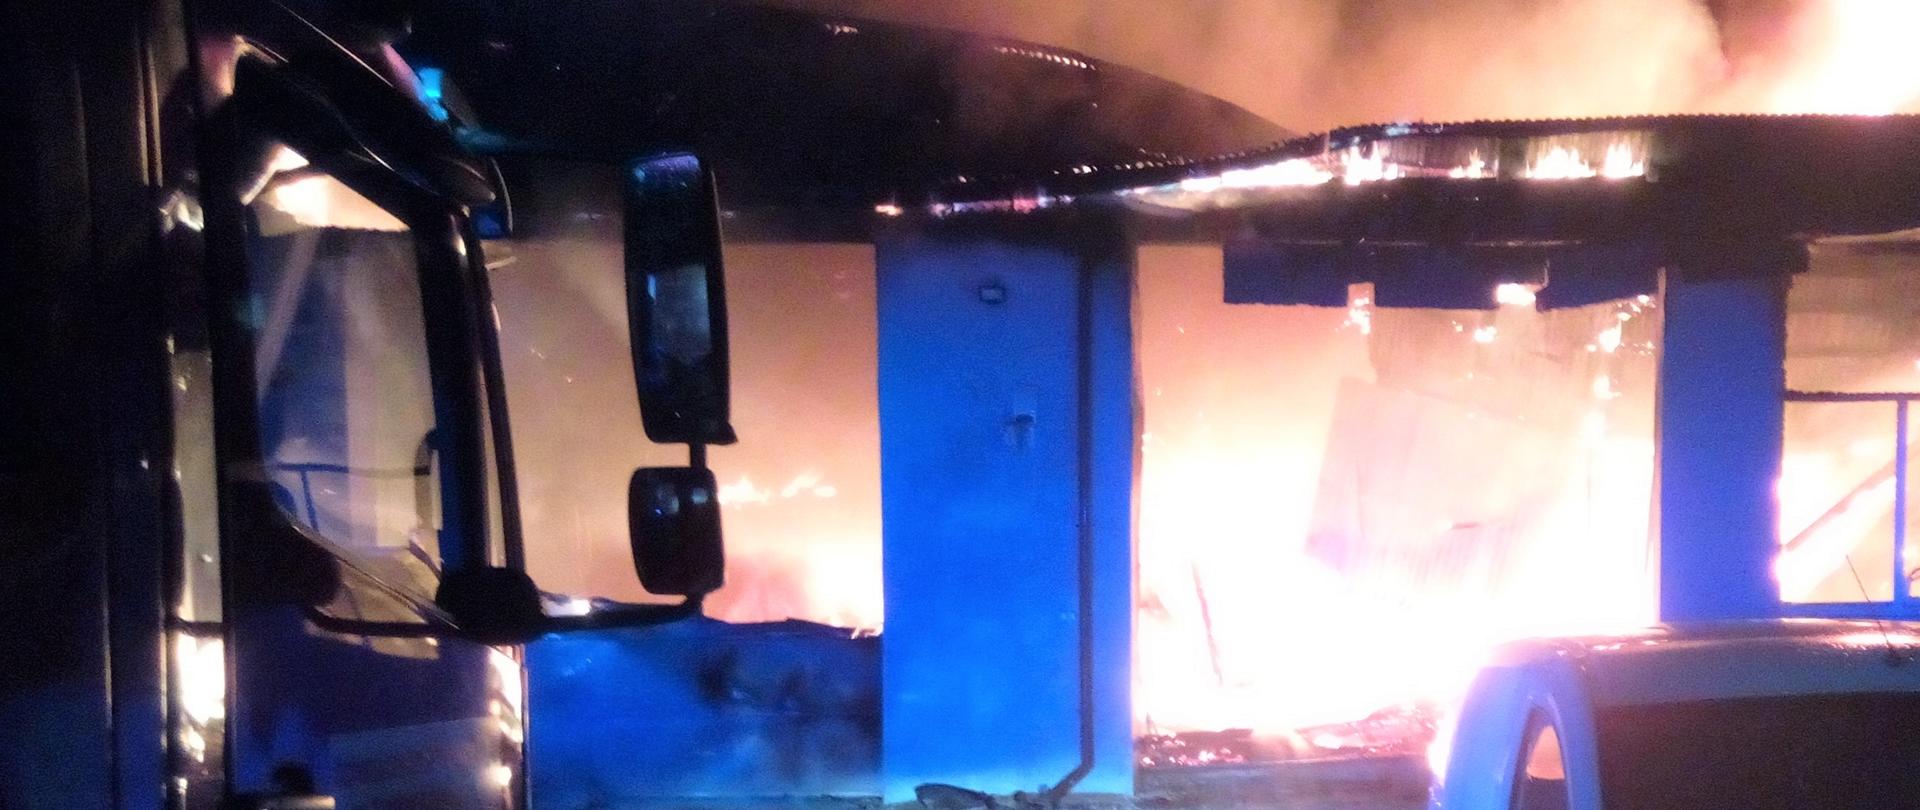 Na zdjęciu przedstawiono rozwinięty pożar w budynku warsztatowym. Po lewej fragment samochodu pożarniczego biorącego udział w działaniach.